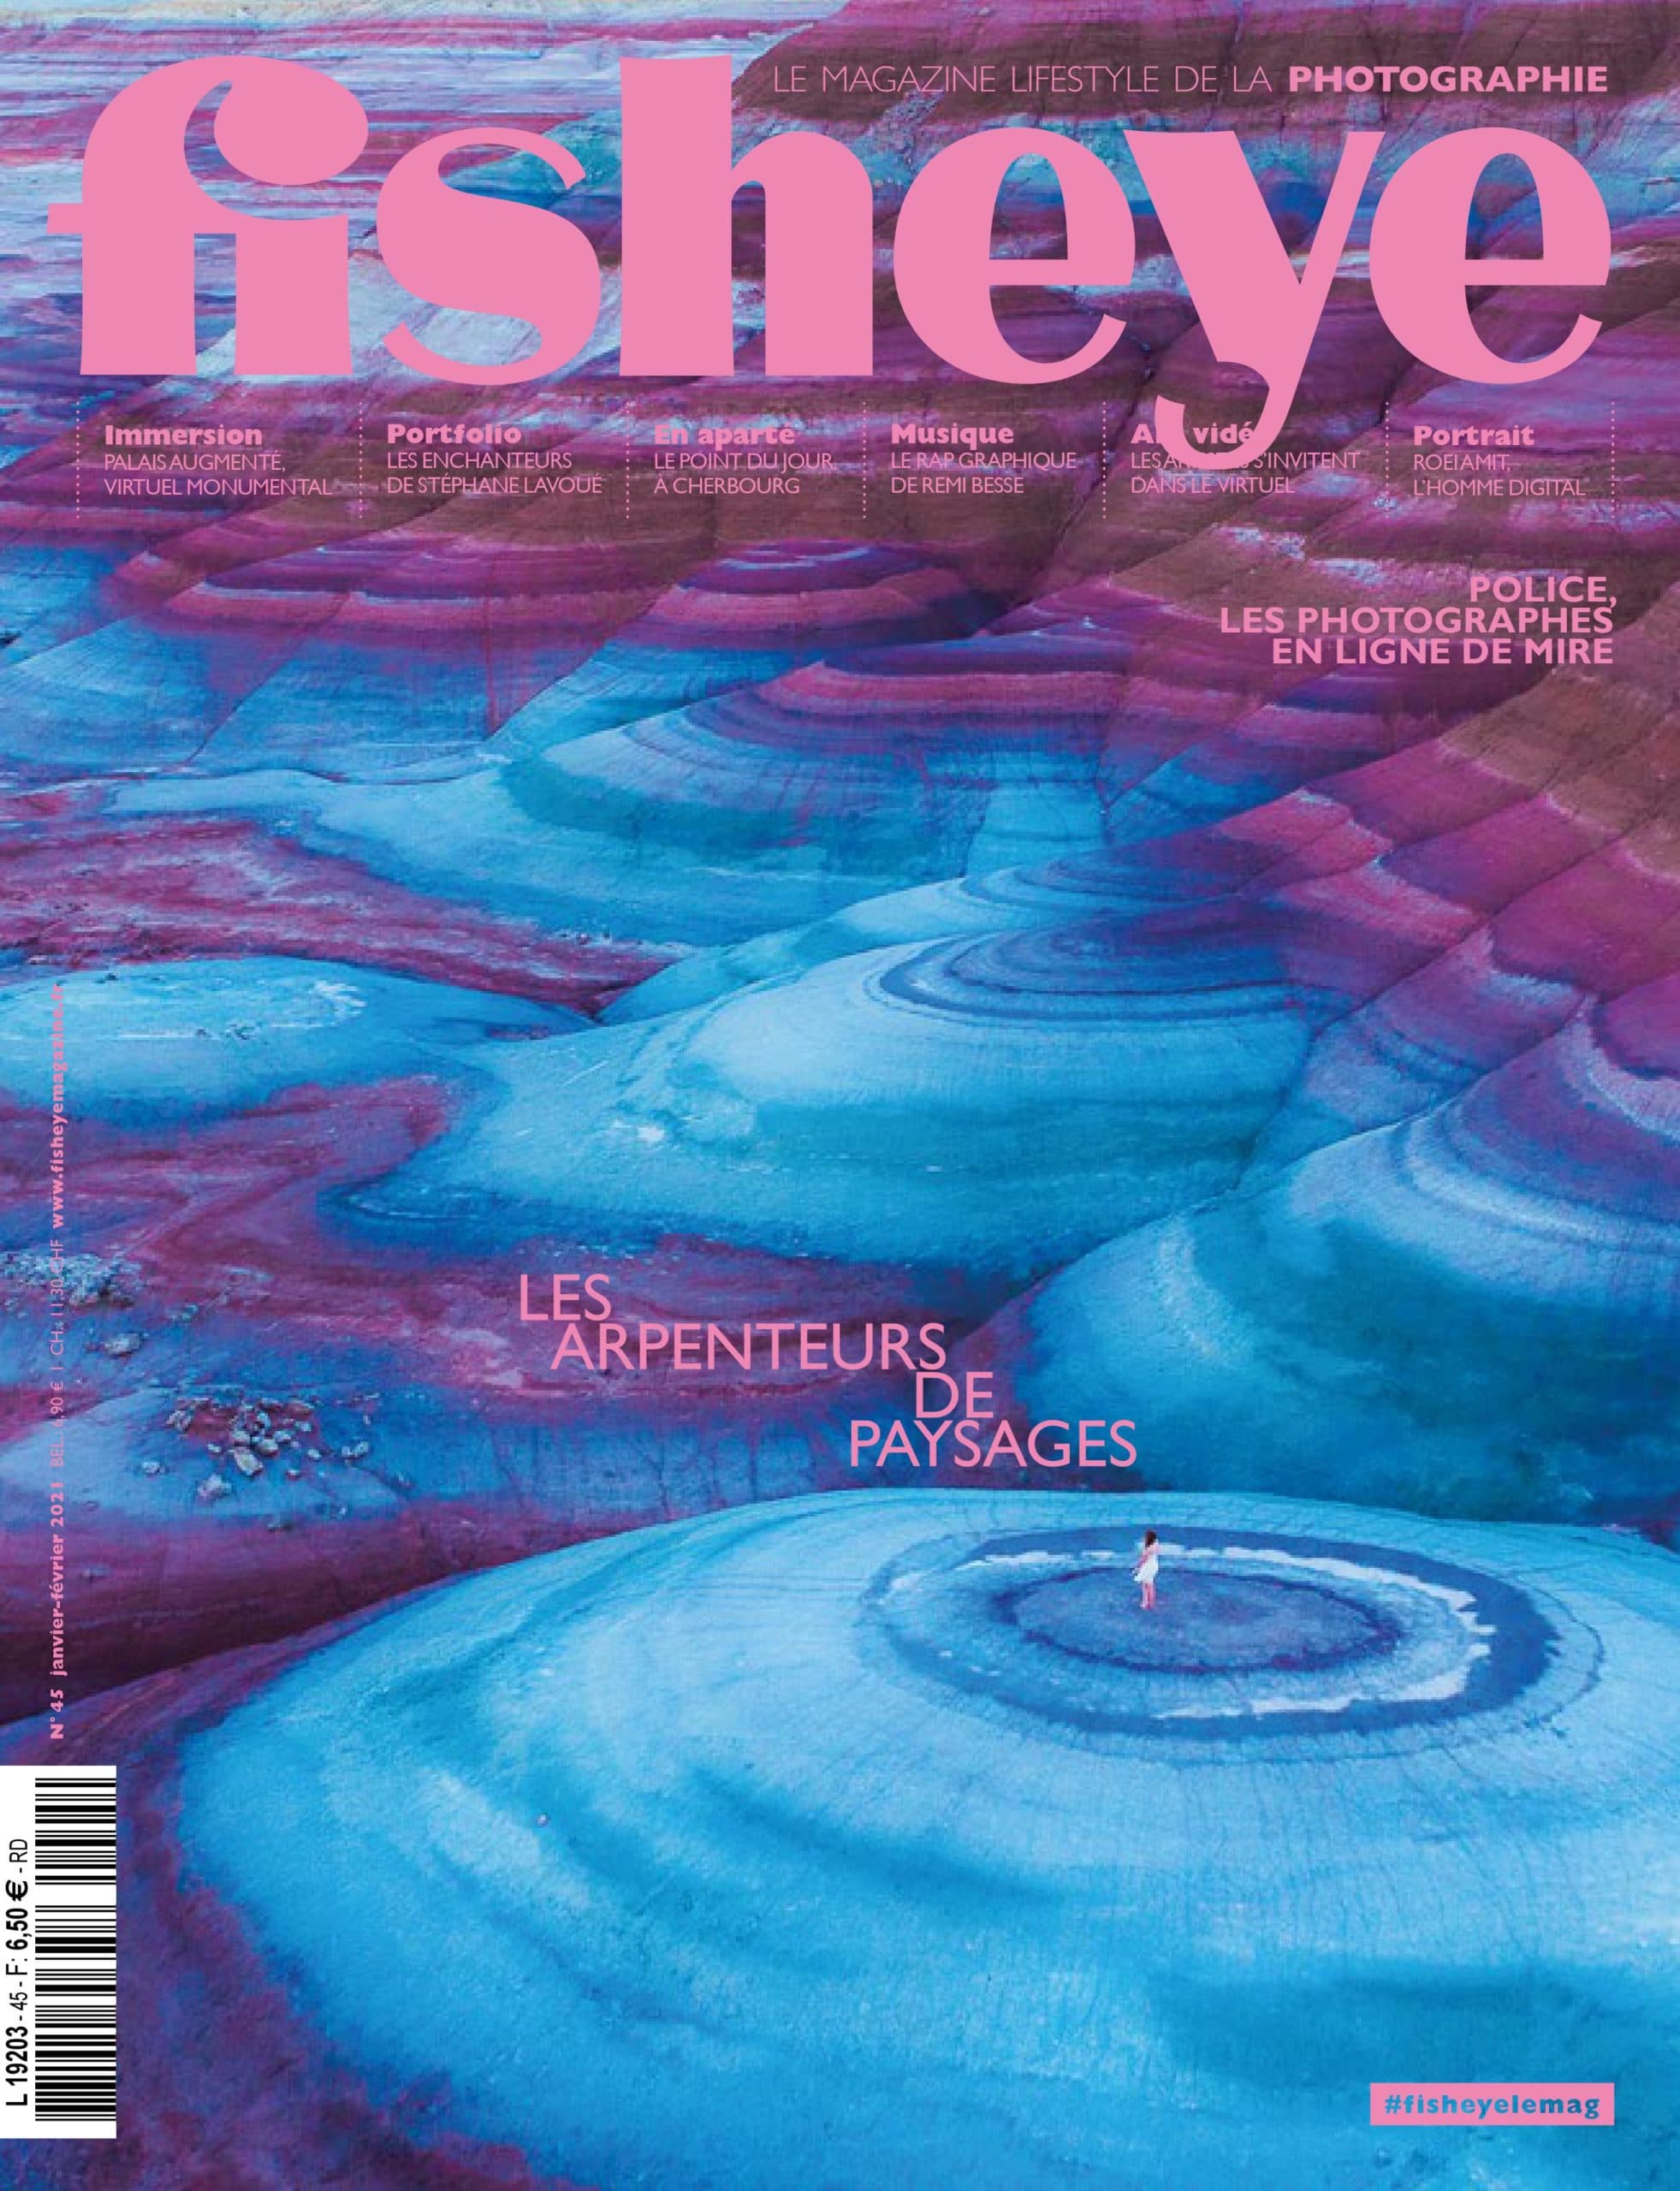 Fisheye Magazine #45 Les arpenteurs de paysages